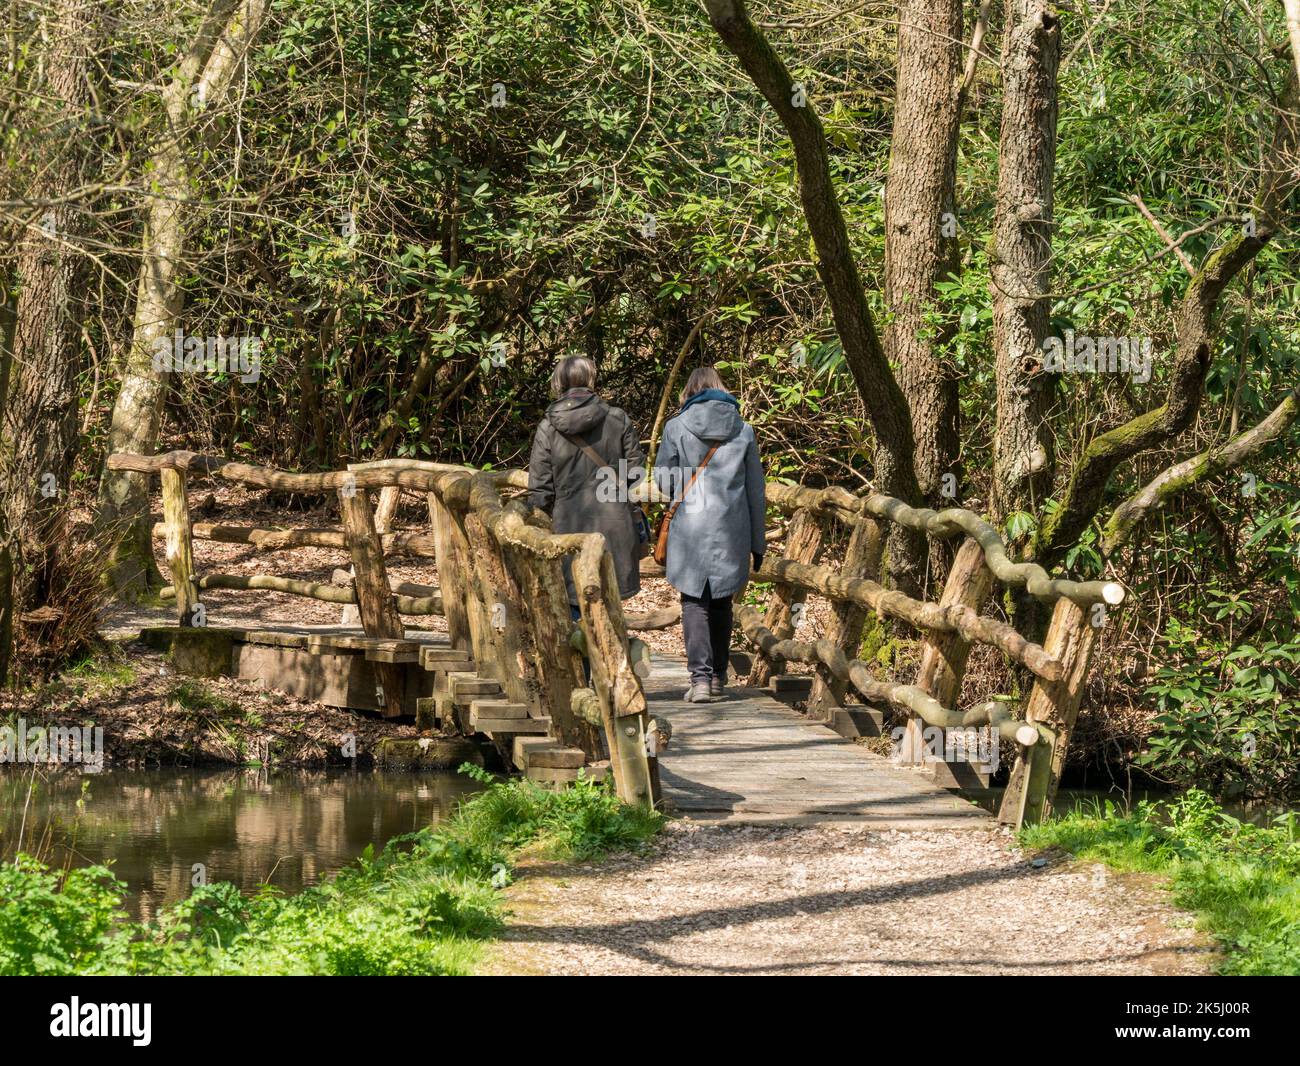 Due donne camminano attraverso un rustico ponte pedonale in legno su un sentiero boscoso tra gli alberi sotto il sole della primavera. Sheffield Park, East Sussex, Inghilterra, Regno Unito Foto Stock